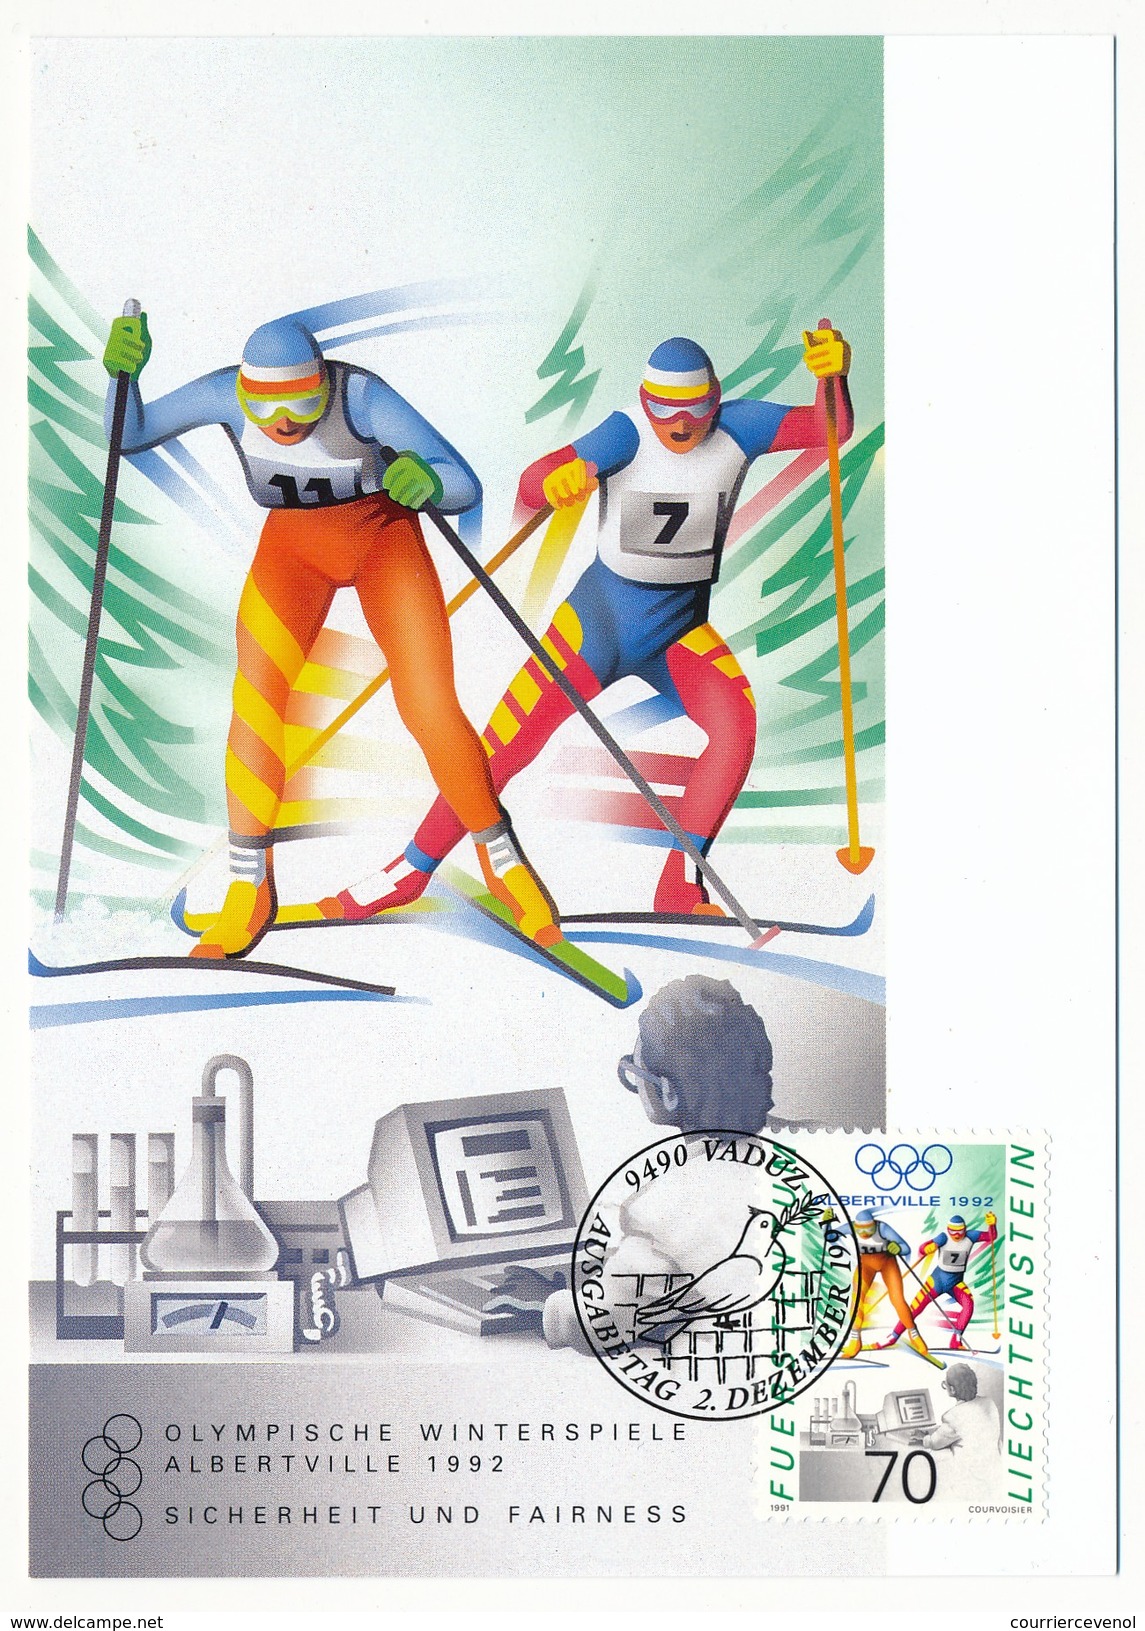 LIECHTENSTEIN - 6 enveloppes + 6 cartes thème Sports (dont Jeux olympiques)